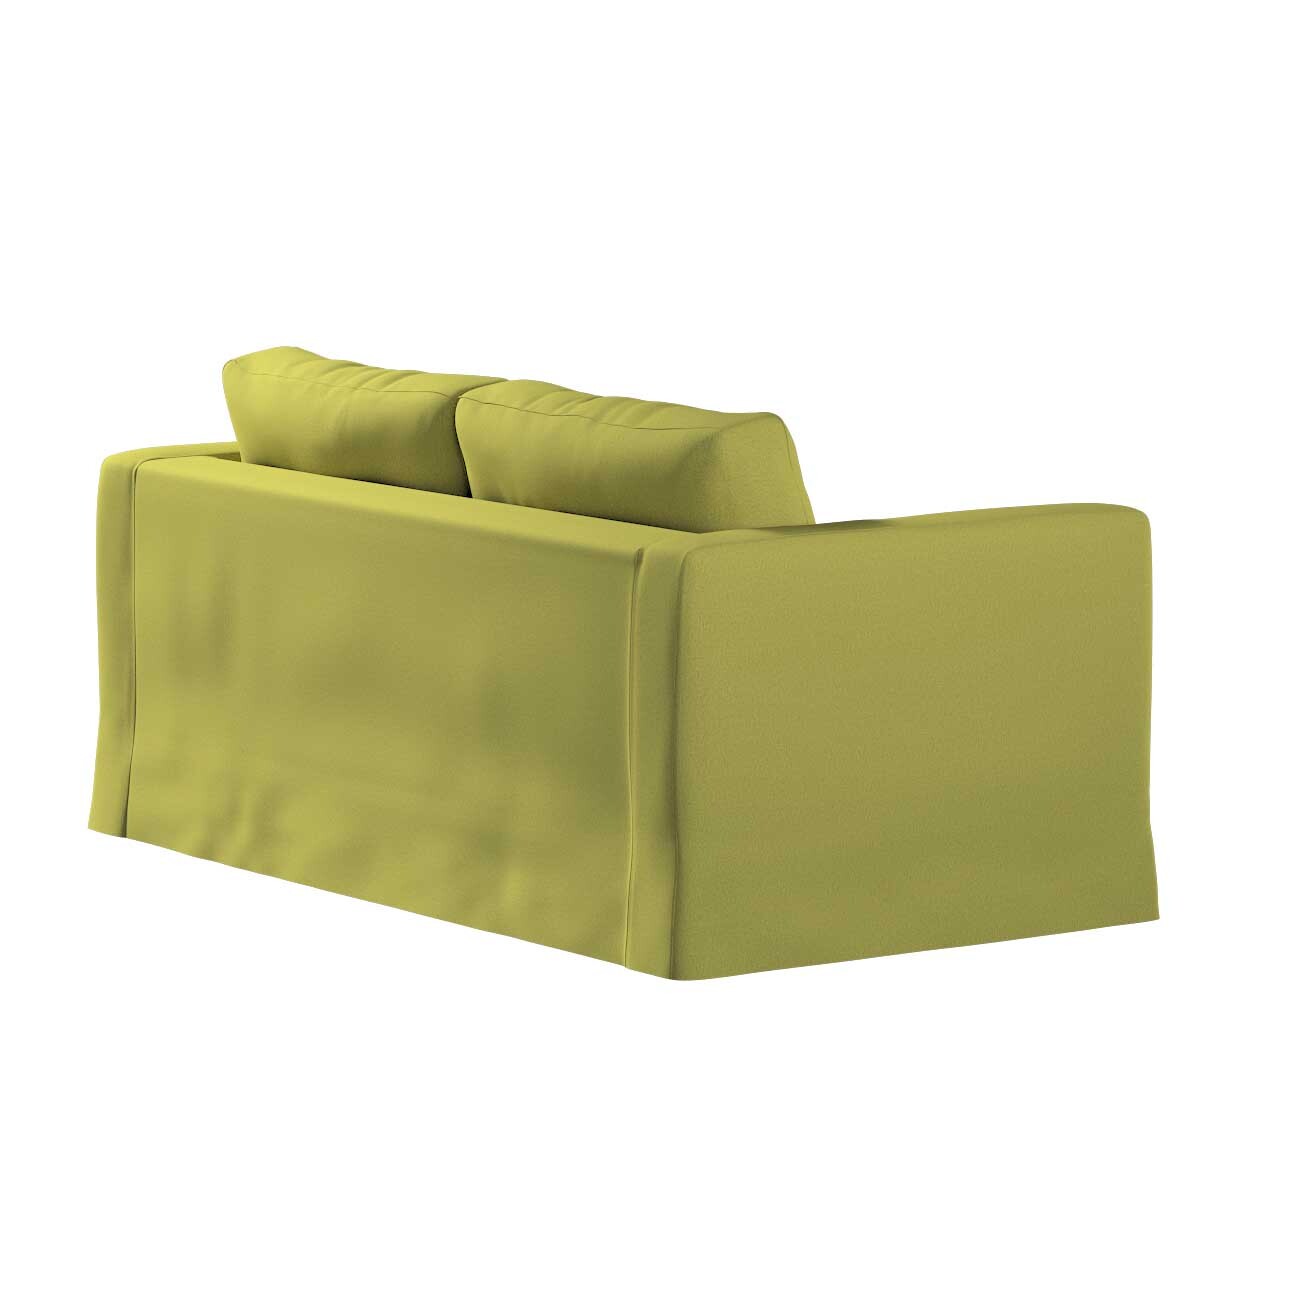 Bezug für Karlstad 2-Sitzer Sofa nicht ausklappbar, lang, limone, Sofahusse günstig online kaufen